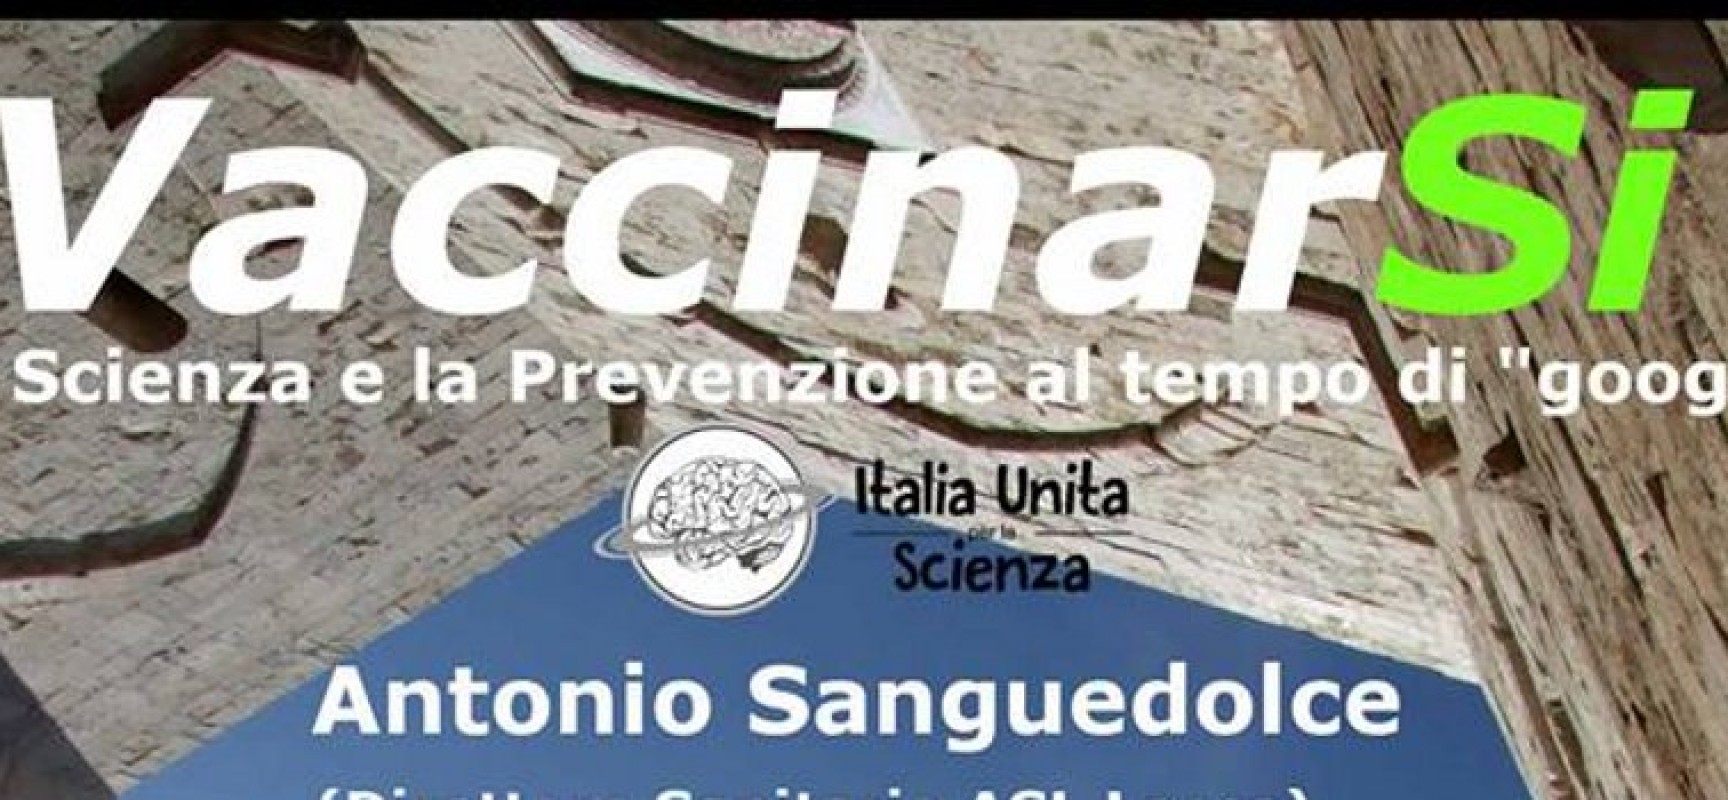 L’associazione “Italia Unita per la Scienza” presenta “VaccinarSi”